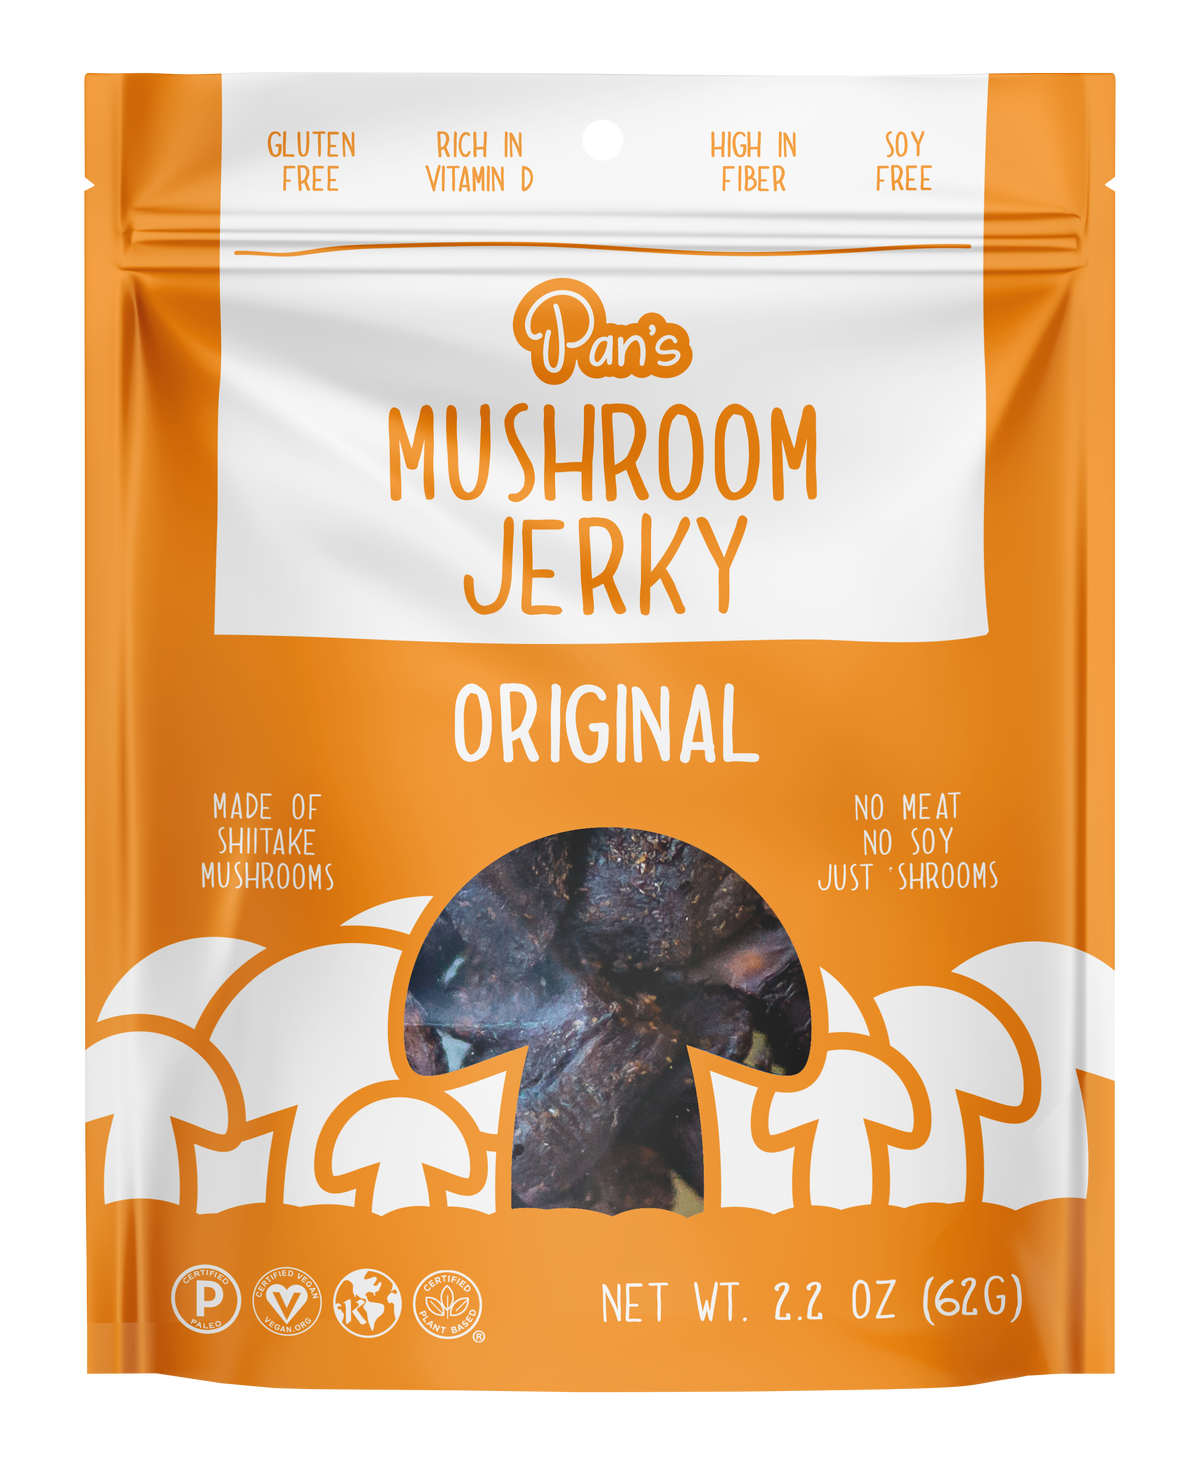 Pan's Mushroom Jerky - Original Vegan Mushroom Jerky